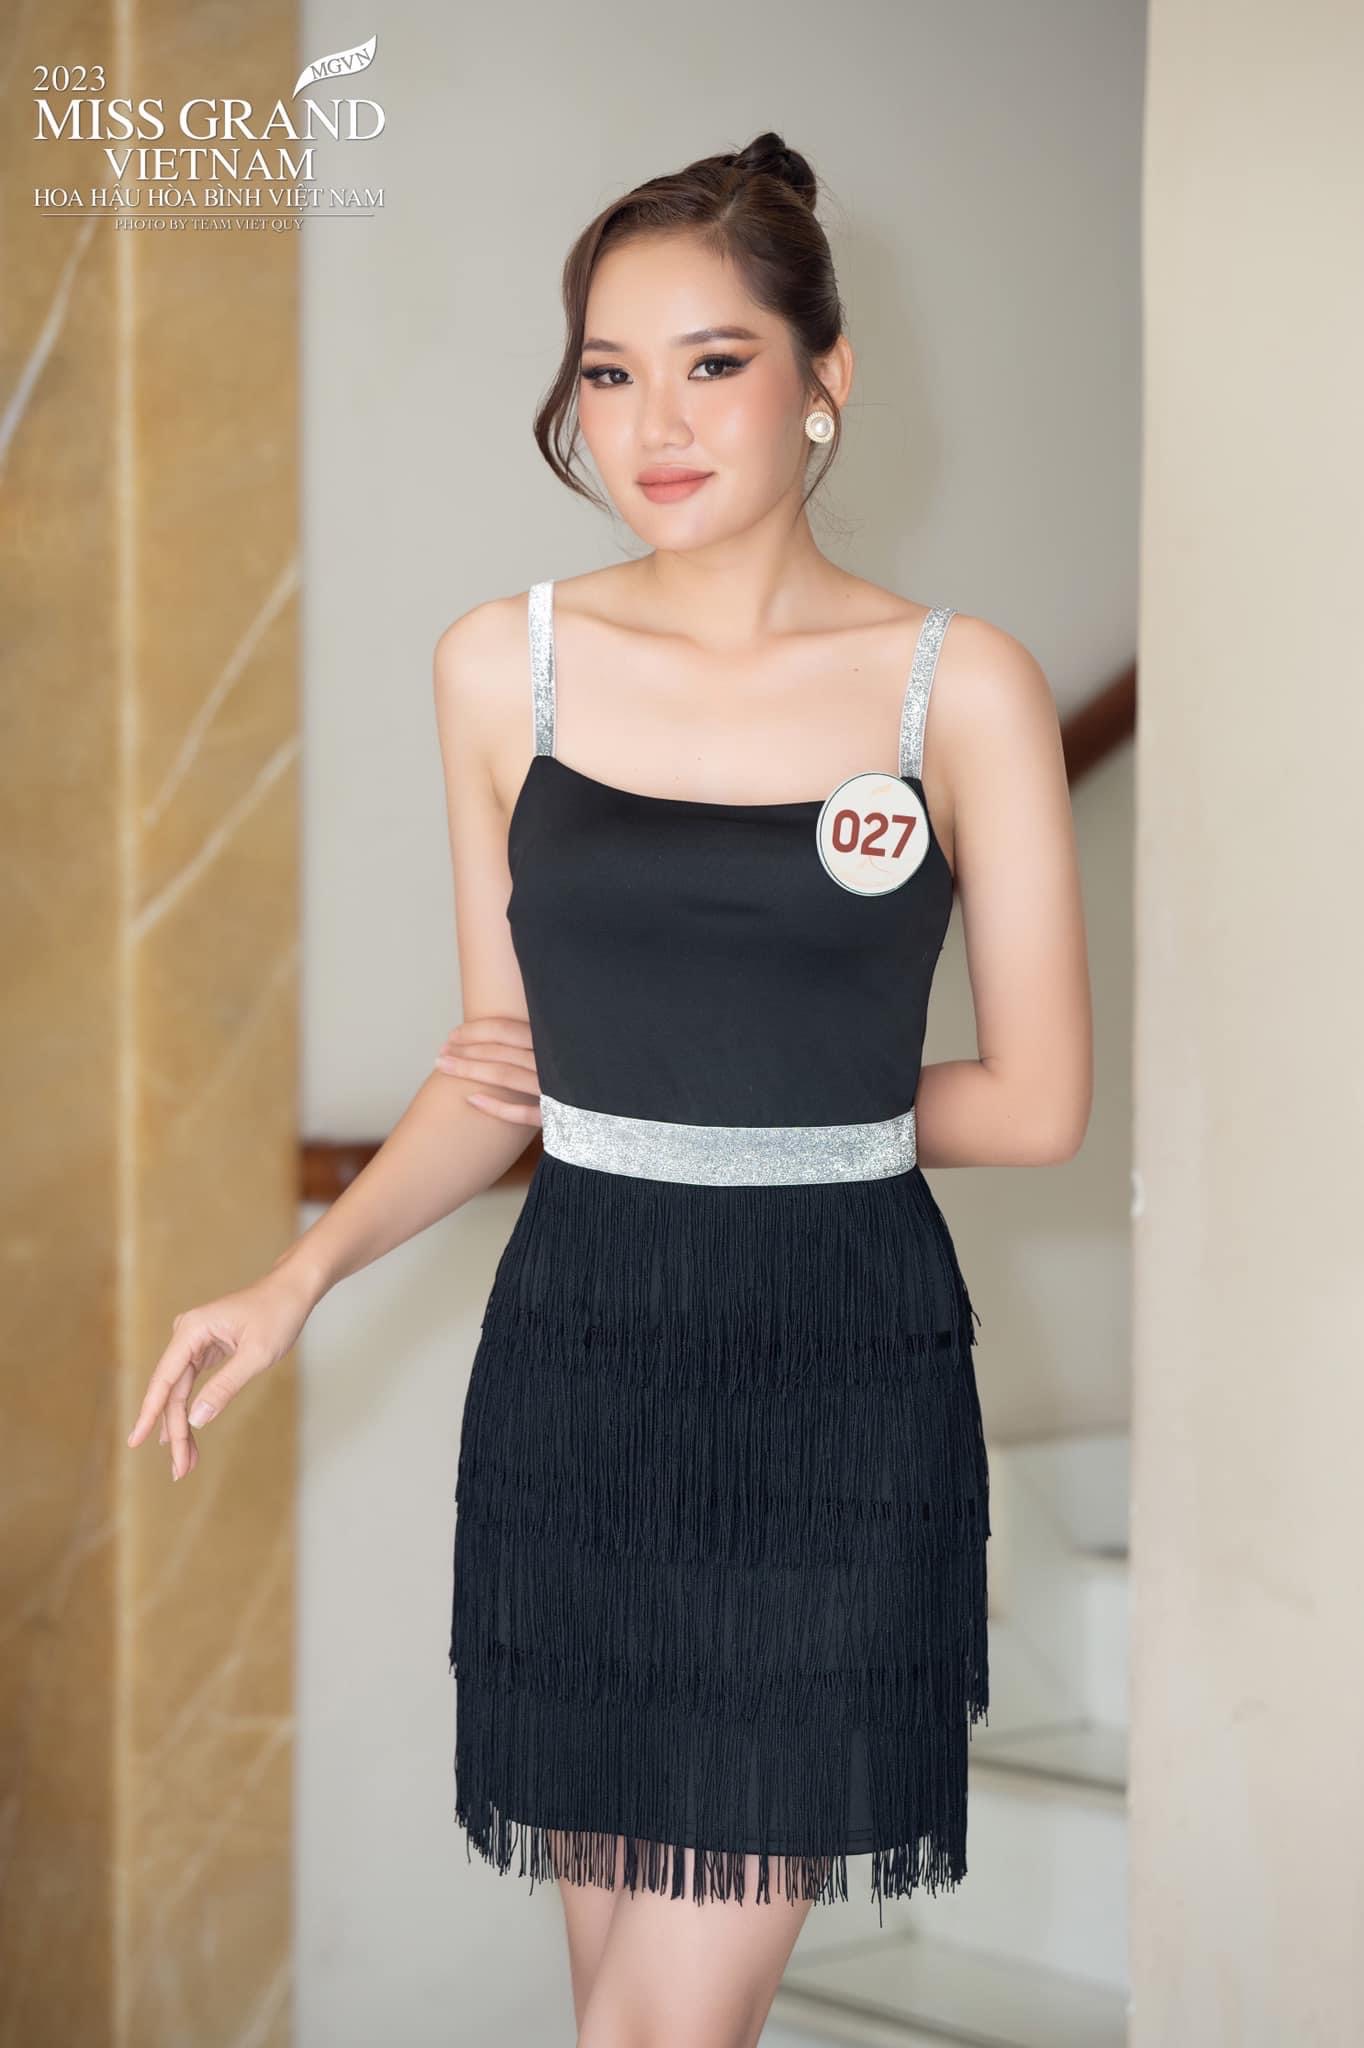 Độc lạ thí sinh tại Miss Grand Vietnam 2023: Giấu trang phục &quot;kín như bưng&quot;, biết pro5 mới bất ngờ - Ảnh 6.